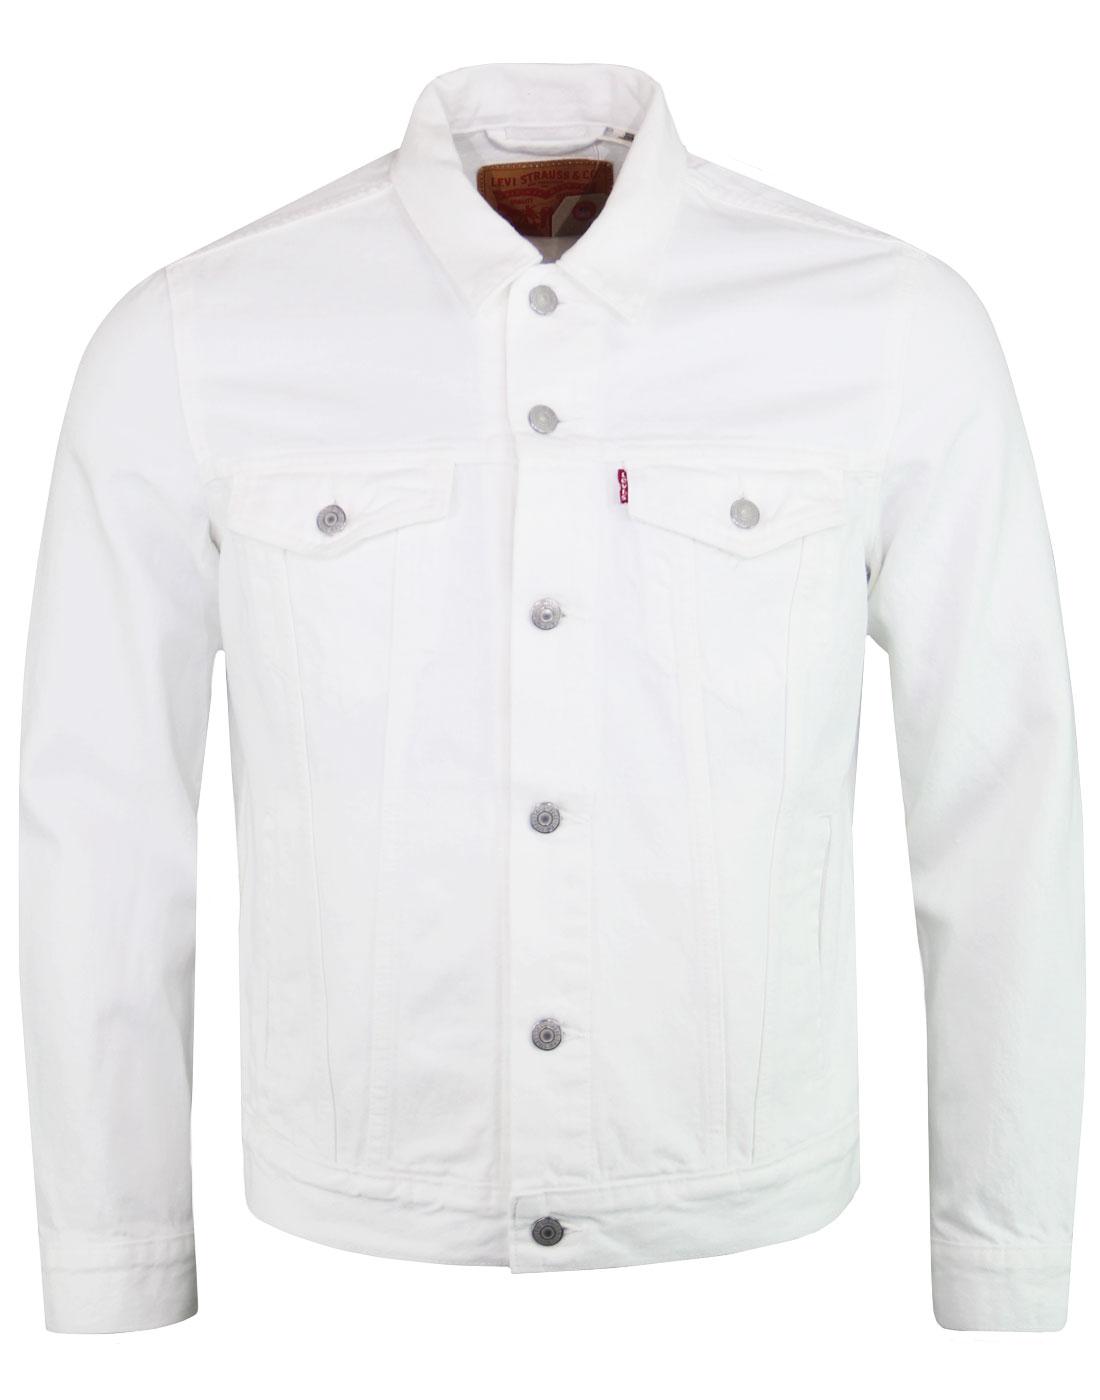 levis white trucker jacket